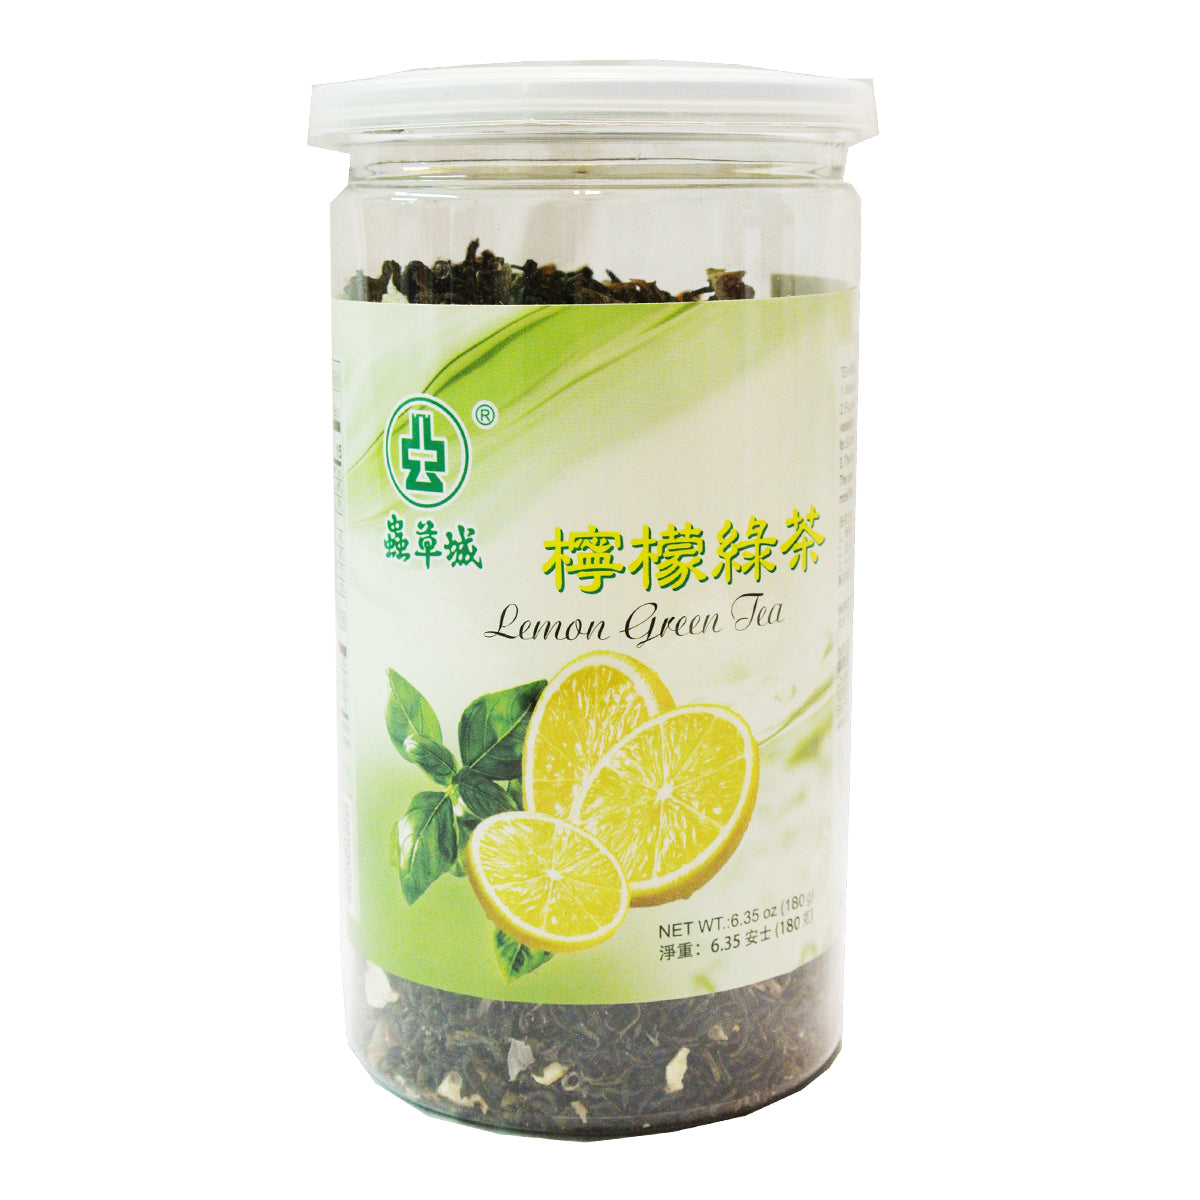 Lemon Green Tea 180g